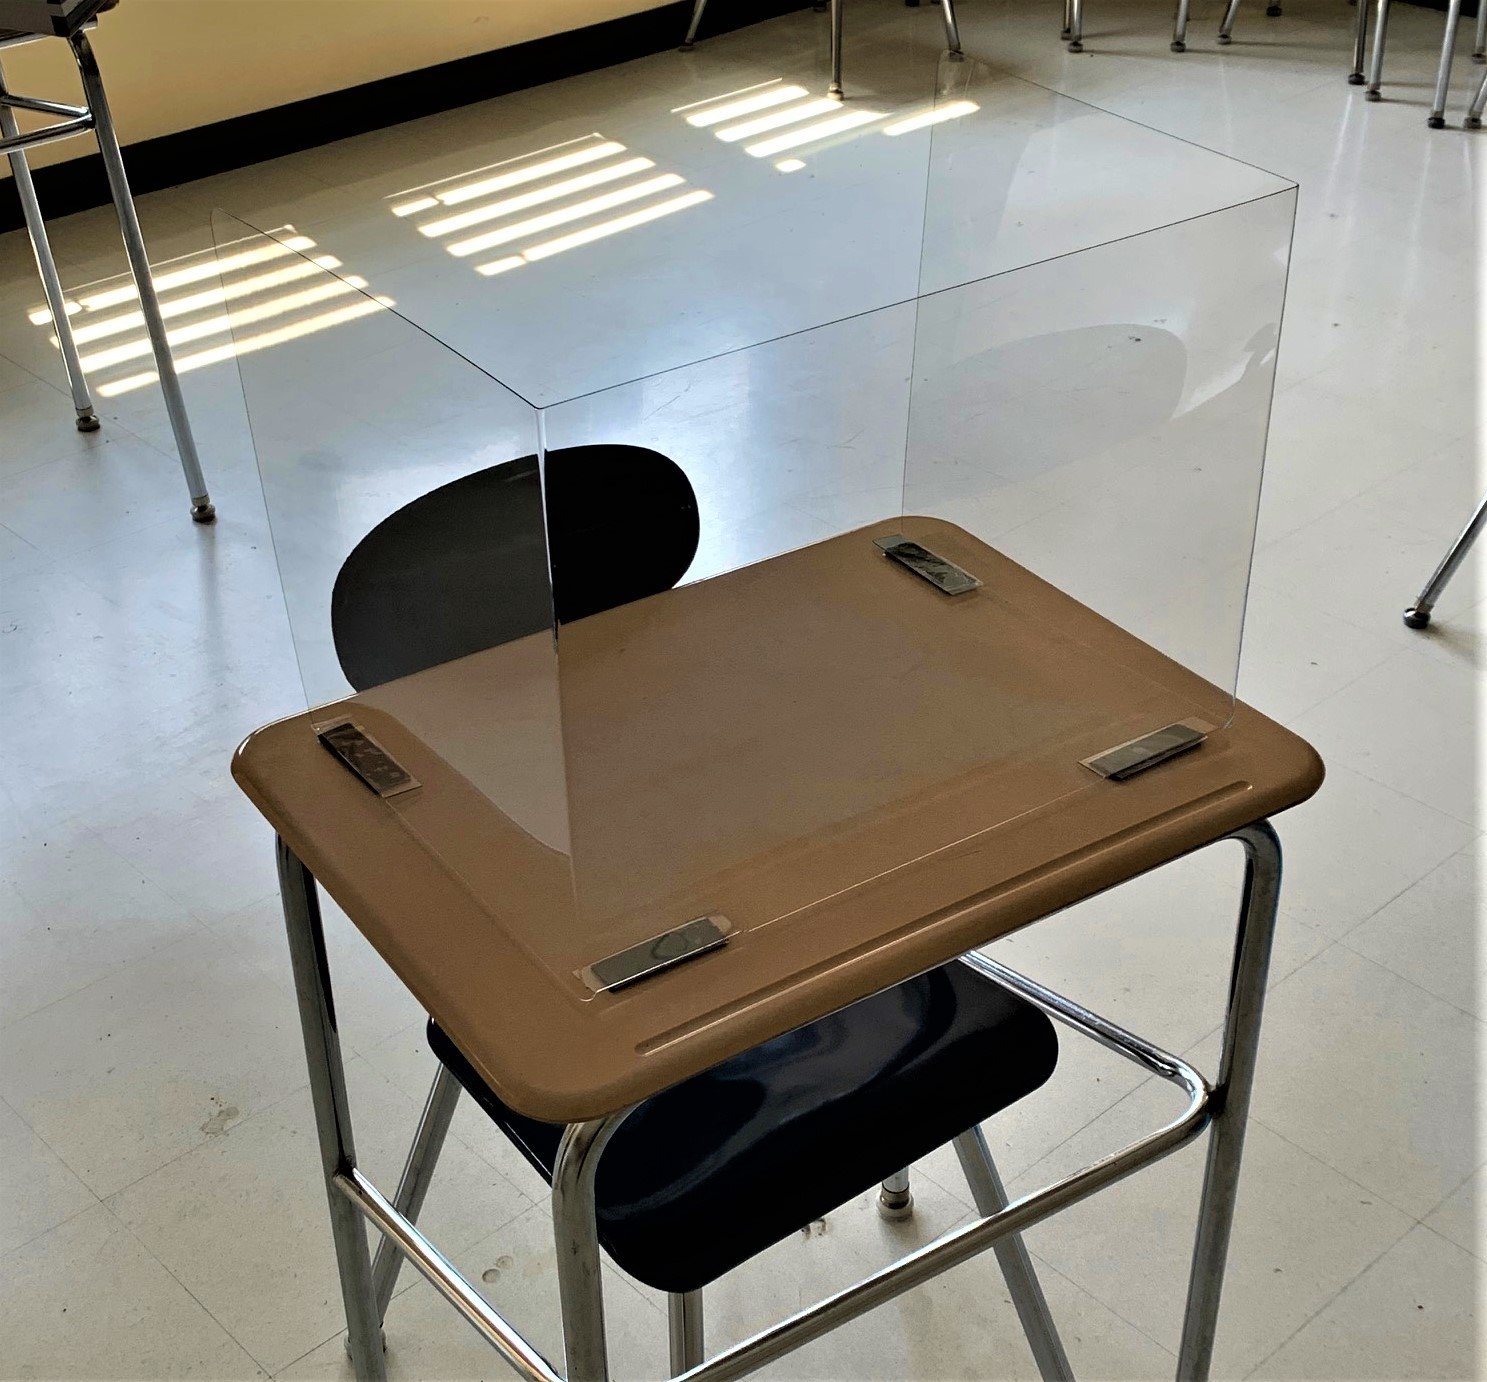 学生桌面防护罩 - 半刚性 Petg